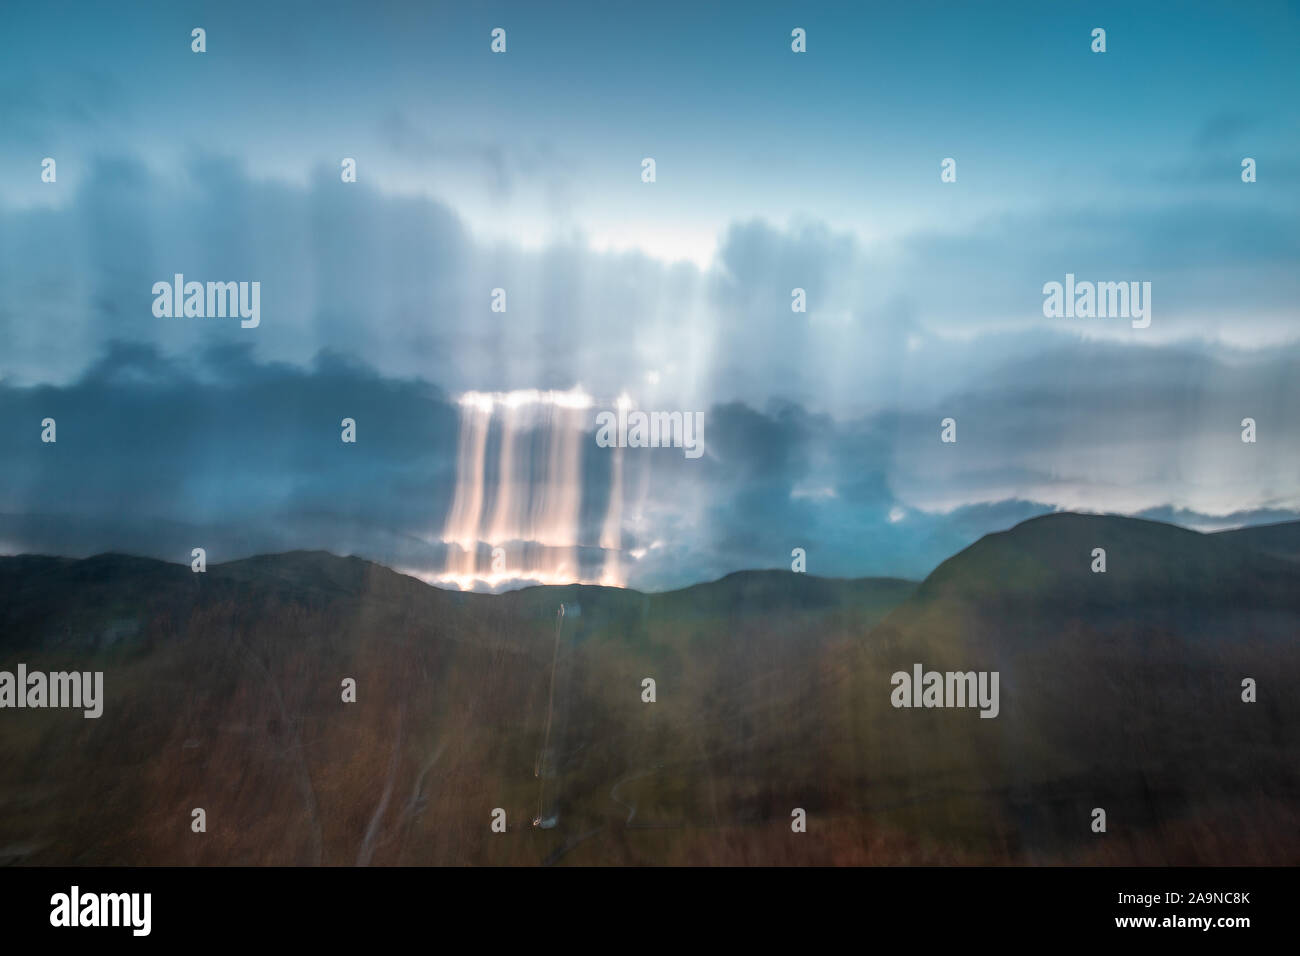 Nuages nad hills au lever du soleil - nature faites par l'arrière-plan flou de mouvement de caméra intentionnelle Banque D'Images